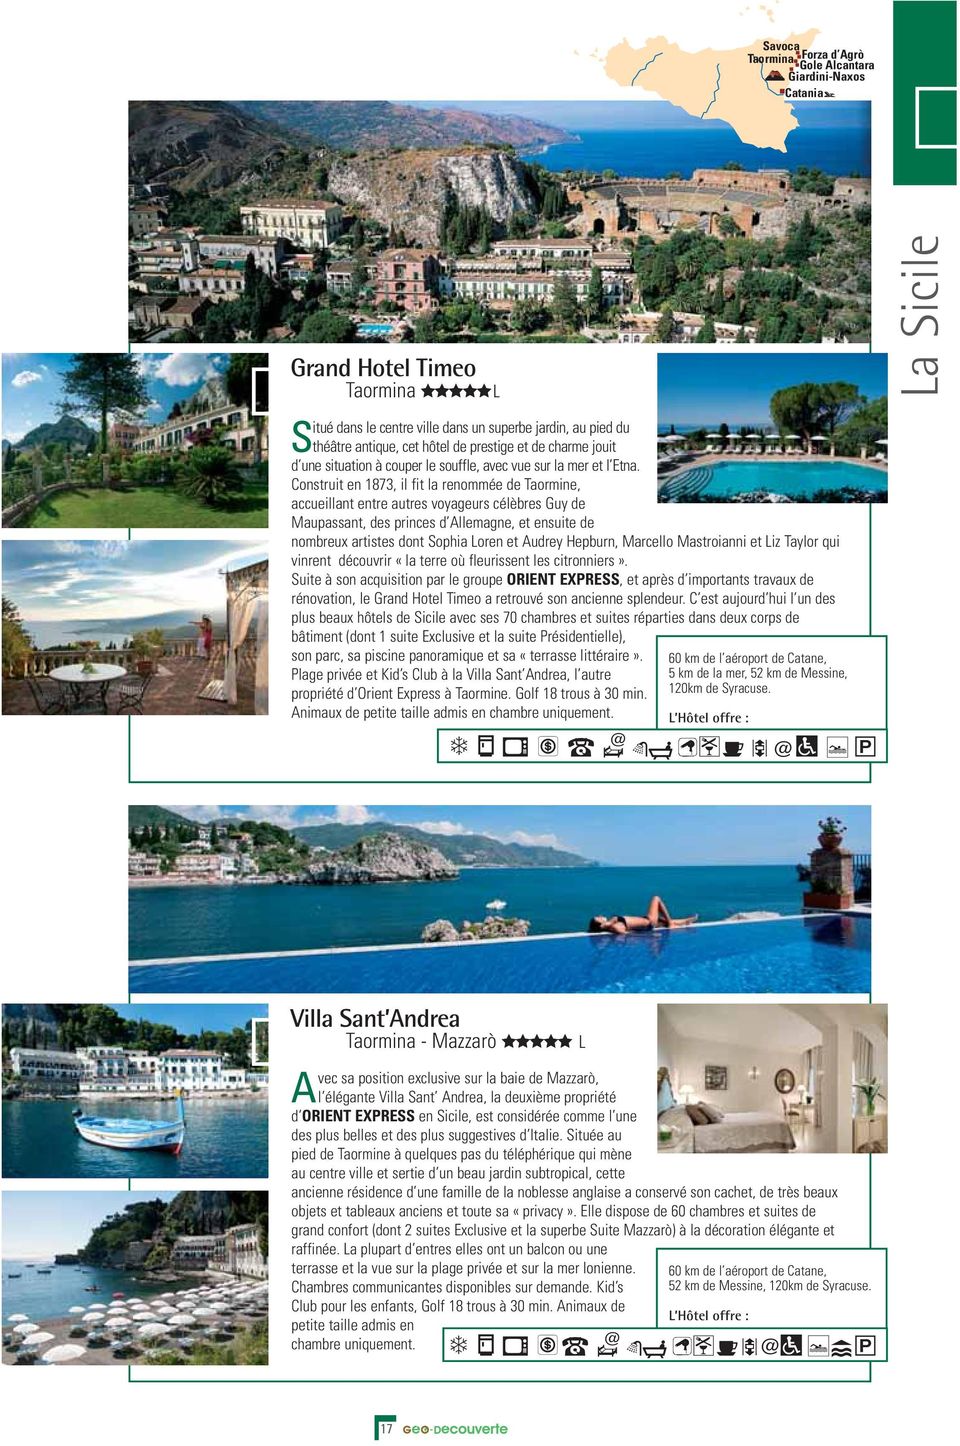 Construit en 1873, il fit la renommée de Taormine, accueillant entre autres voyageurs célèbres Guy de Maupassant, des princes d Allemagne, et ensuite de nombreux artistes dont Sophia Loren et Audrey